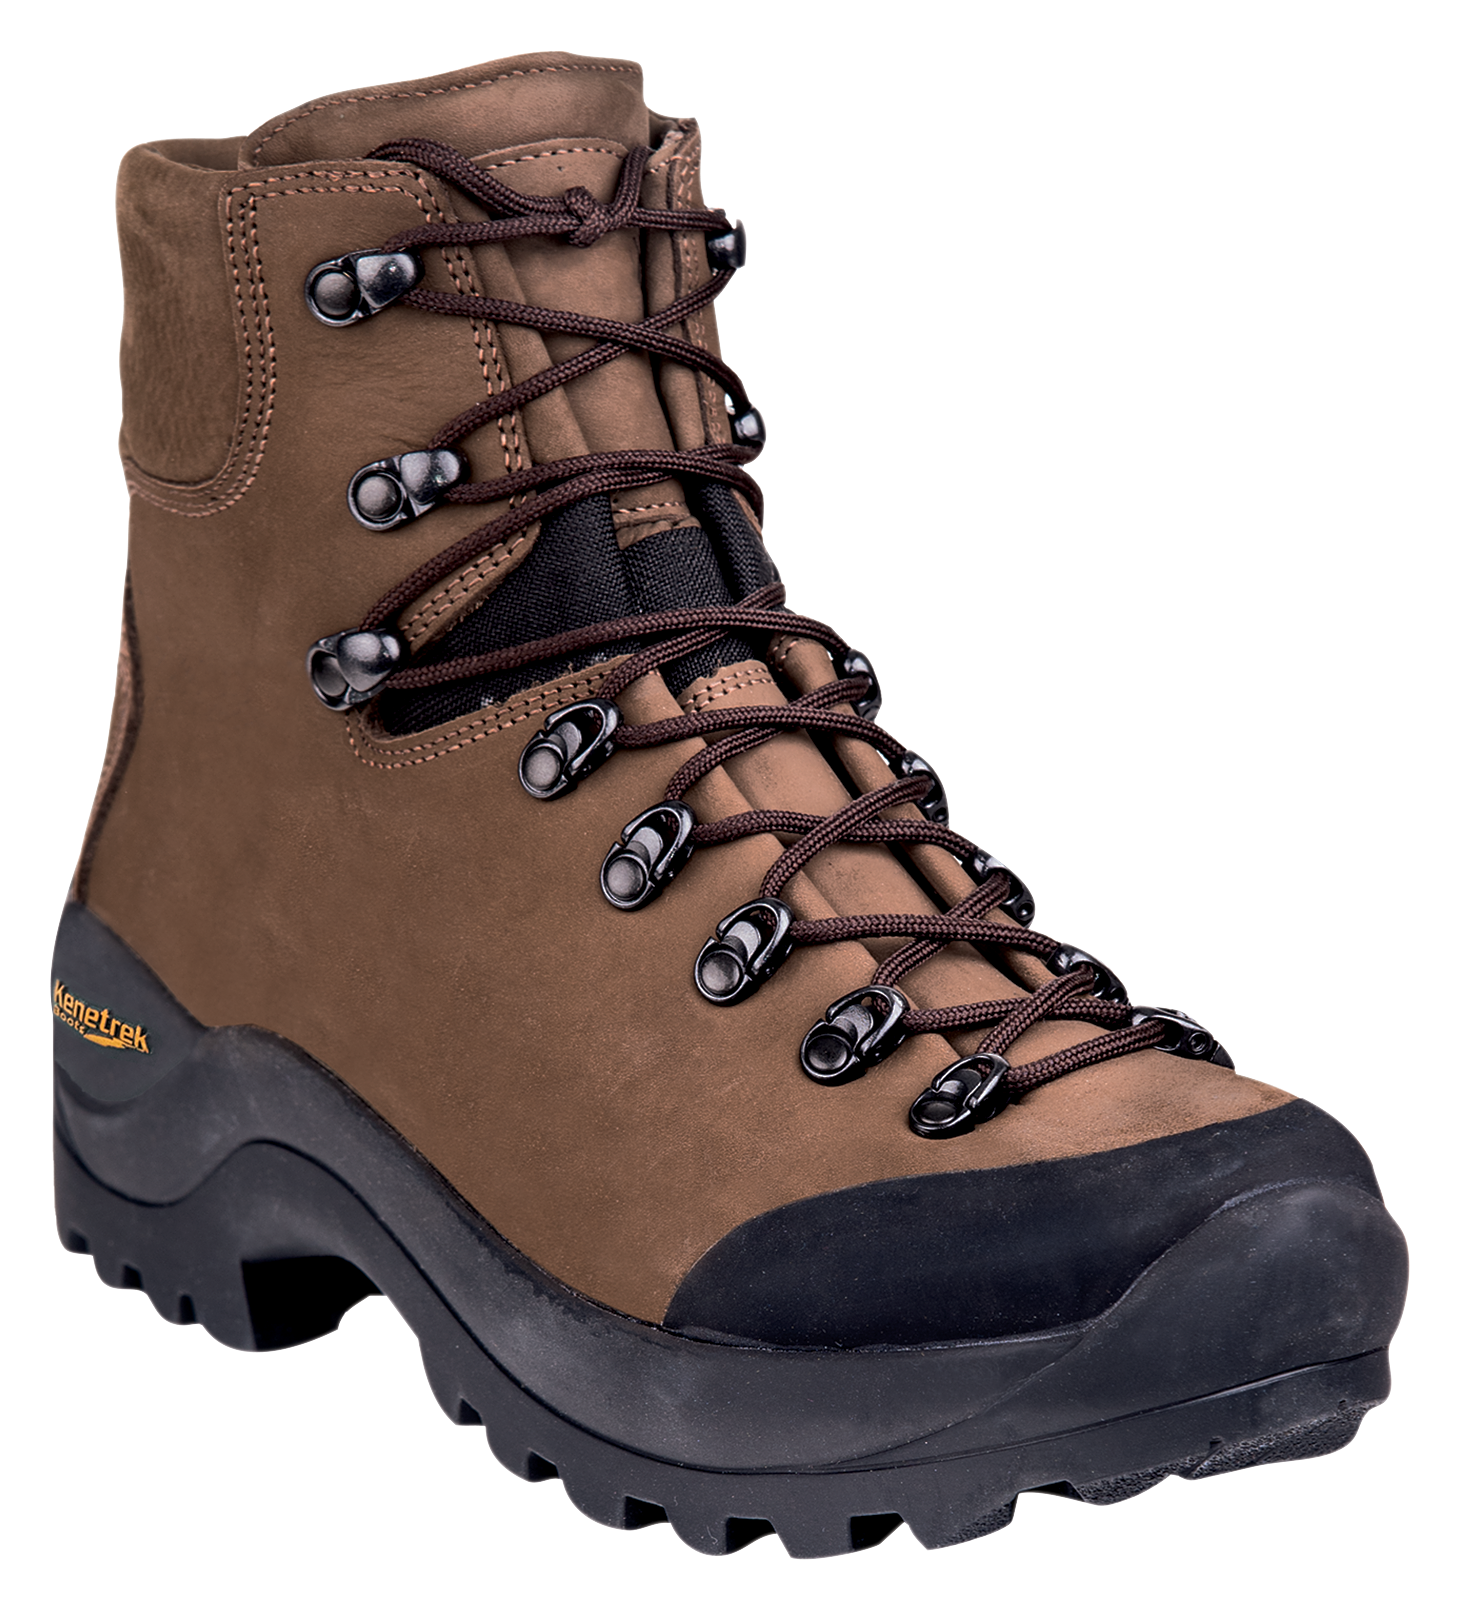 Kenetrek Desert Guide Hunting Boots for Men - Brown - 10.5M